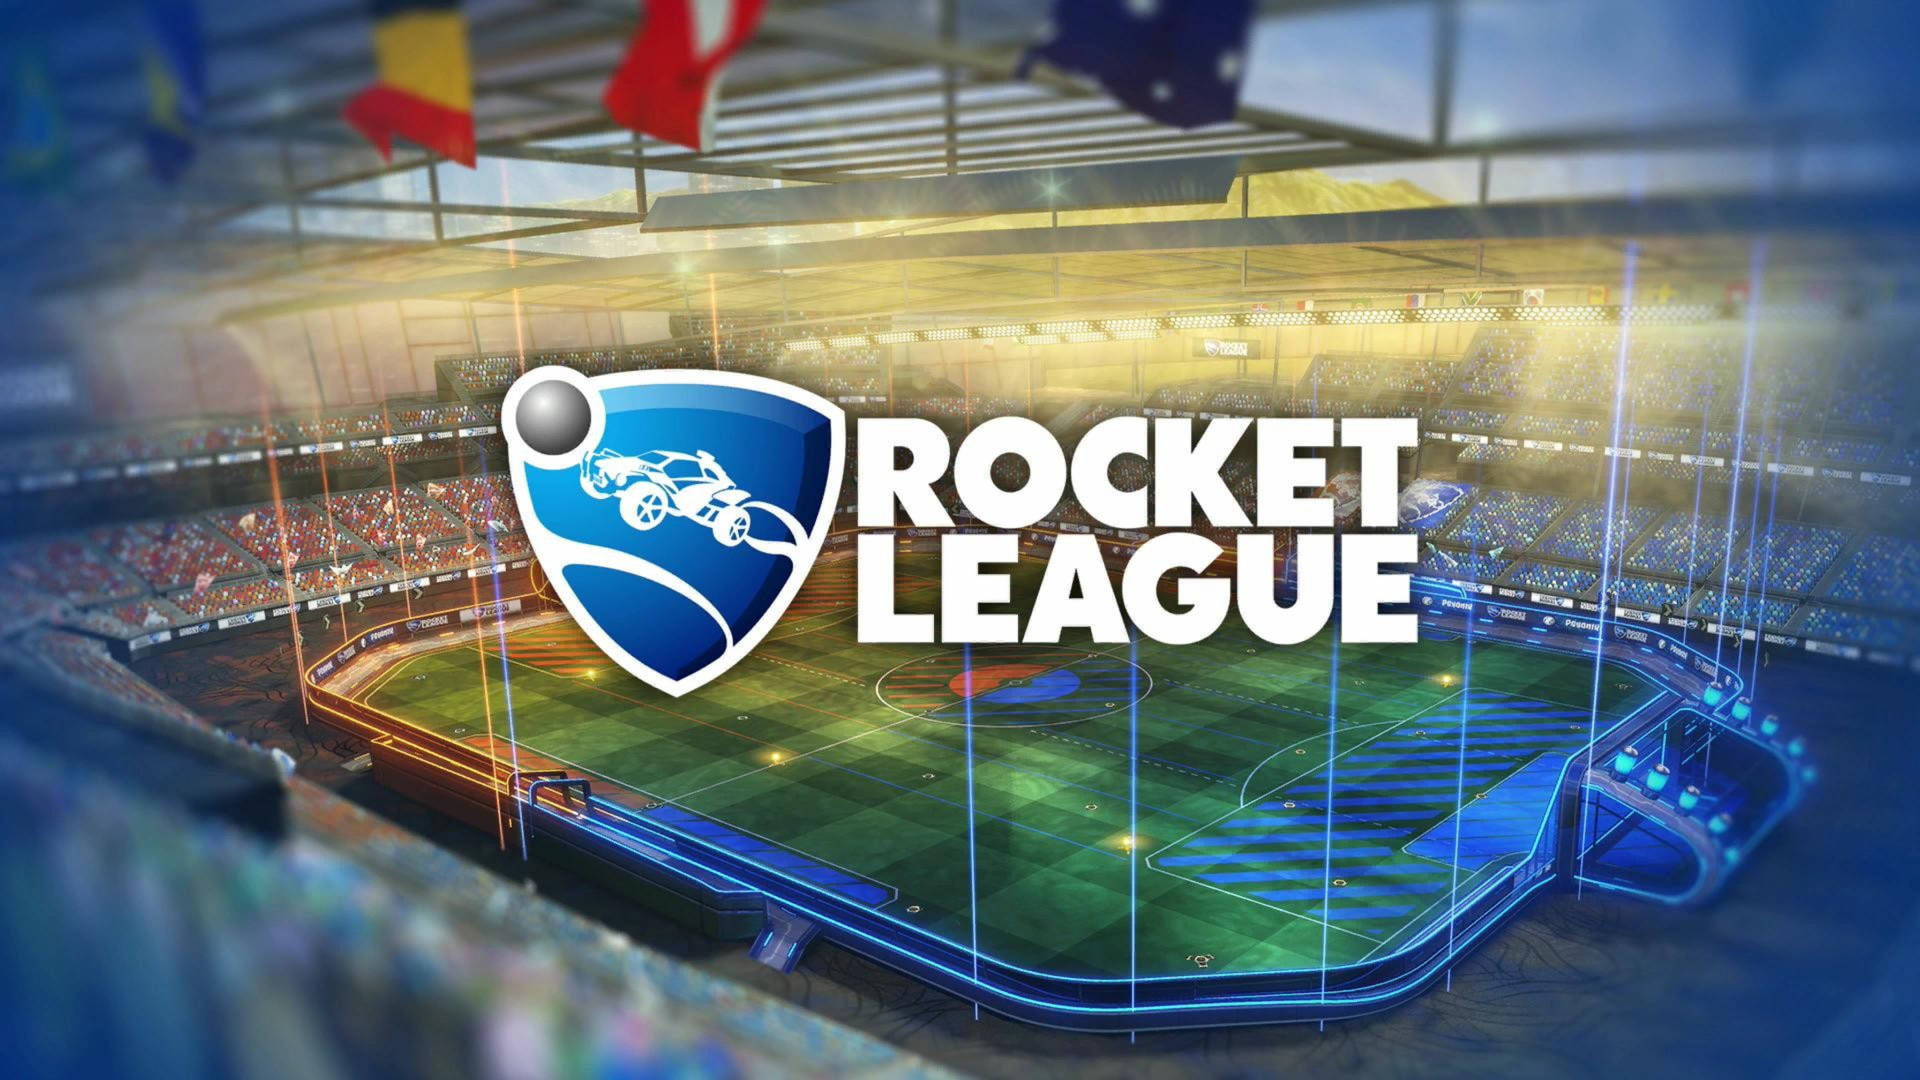 Rocket League Hd Logo On Field